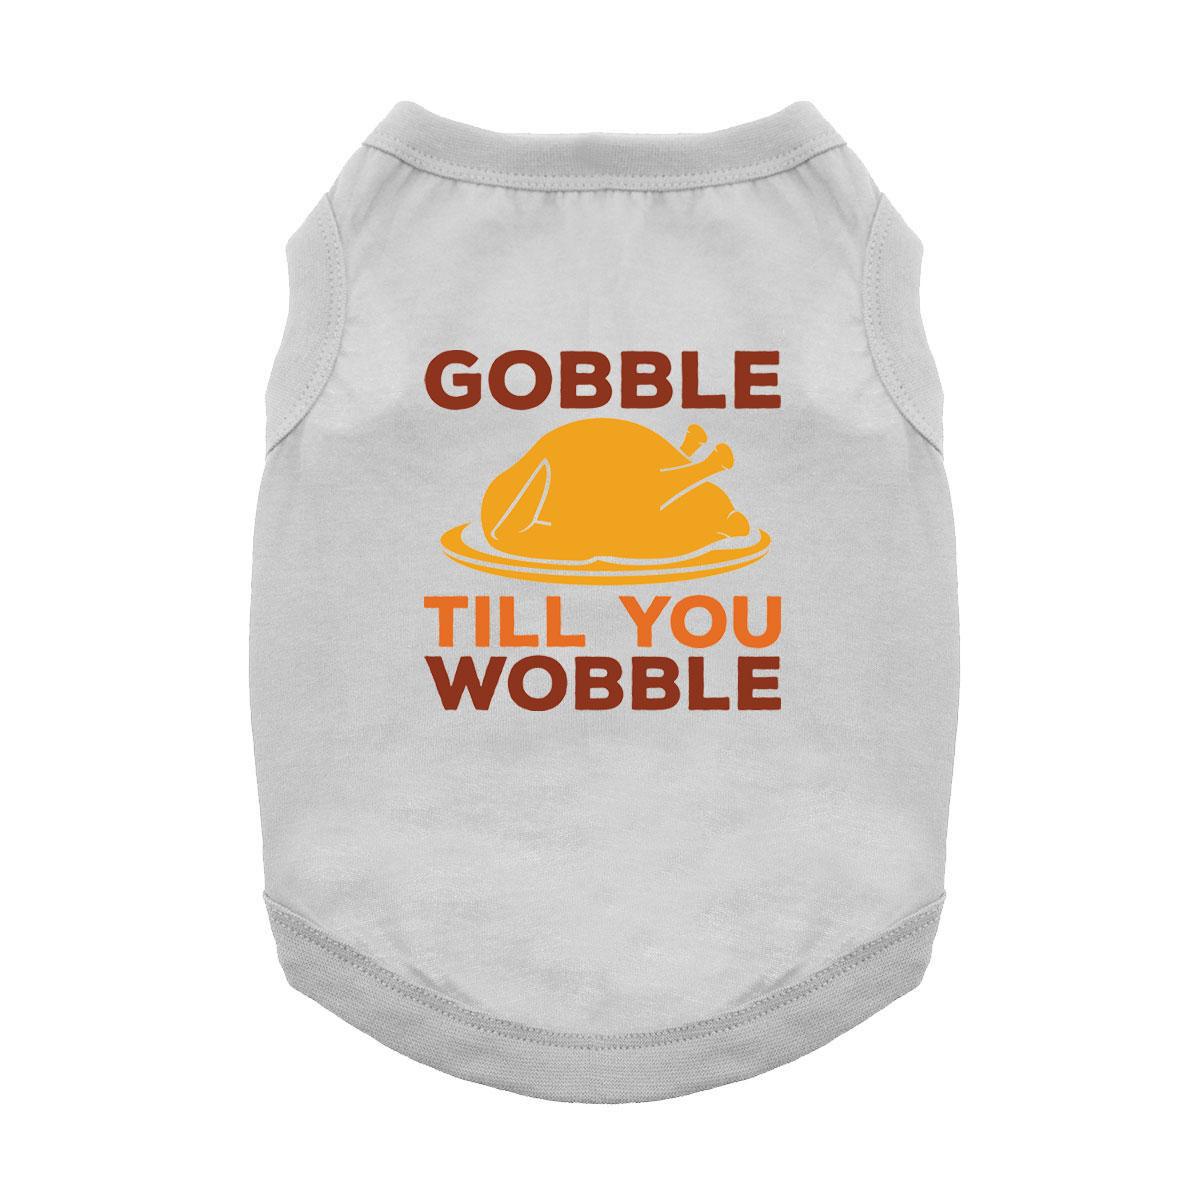 Gobble 'Til You Wobble Dog Shirt - Gray